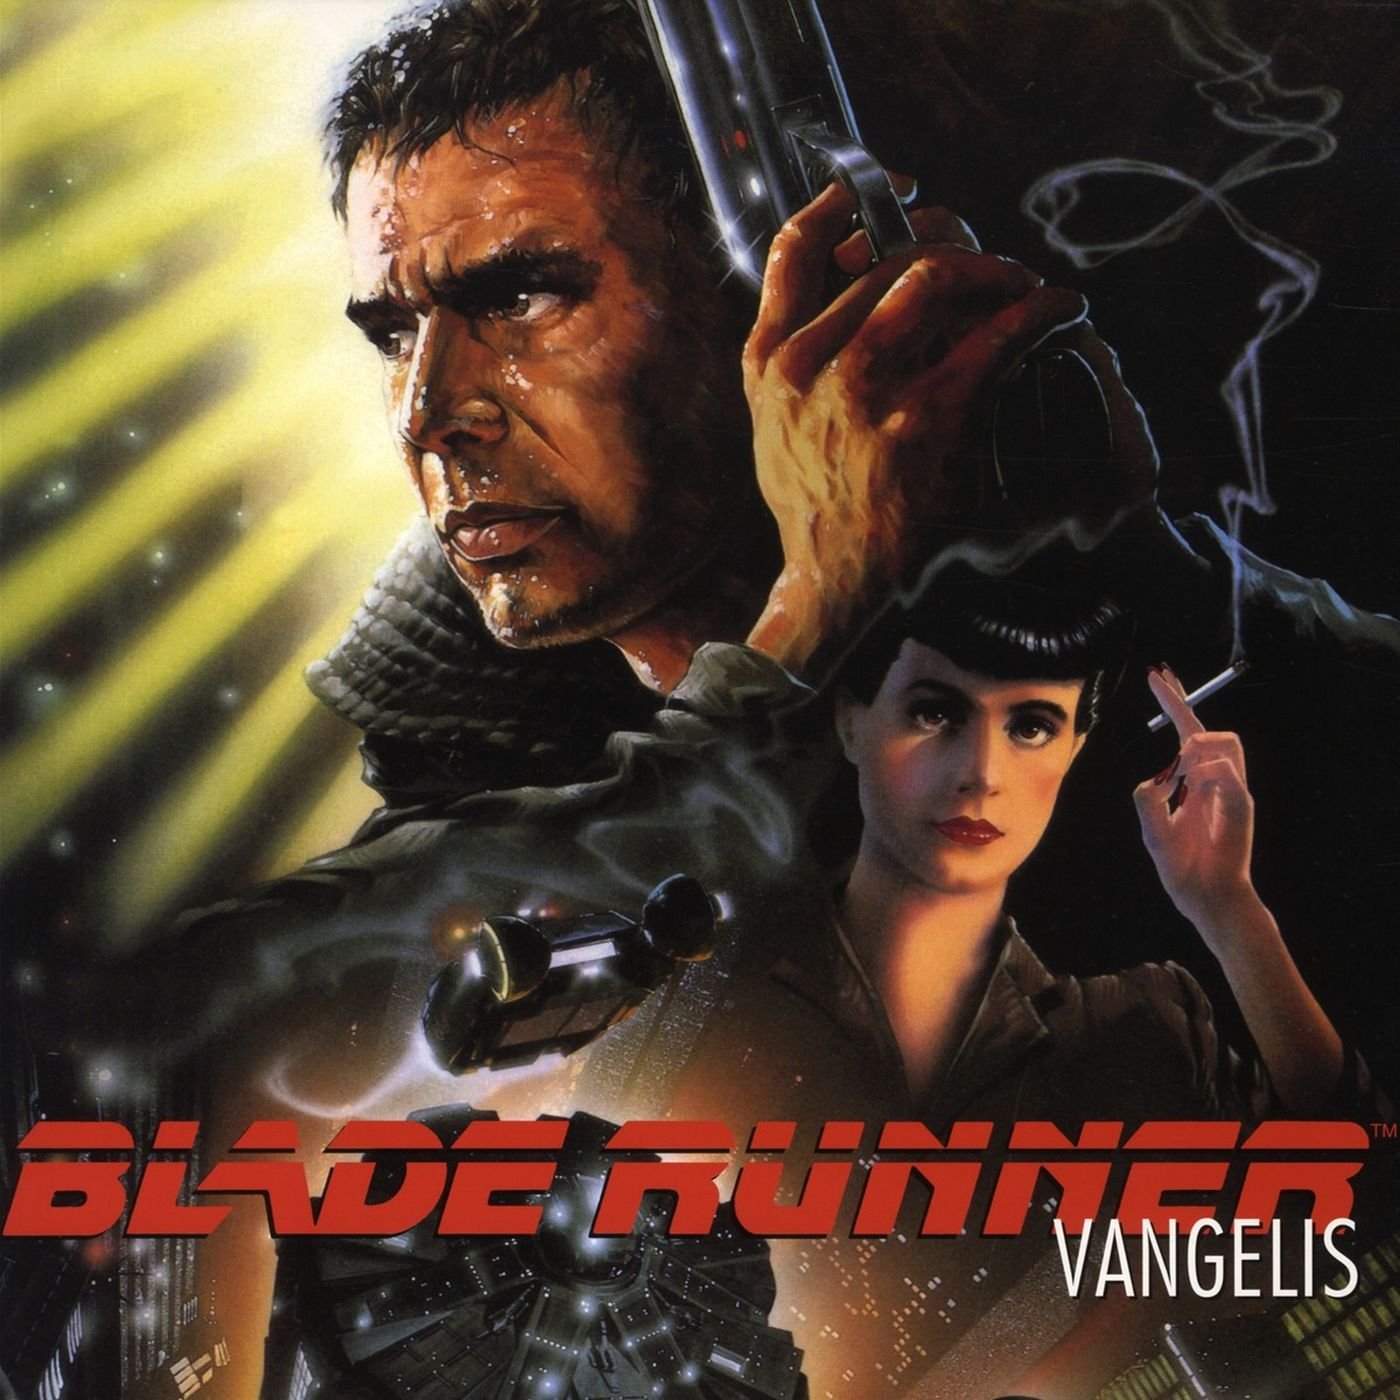 VANGELIS "Blade Runner Soundtrack" LP